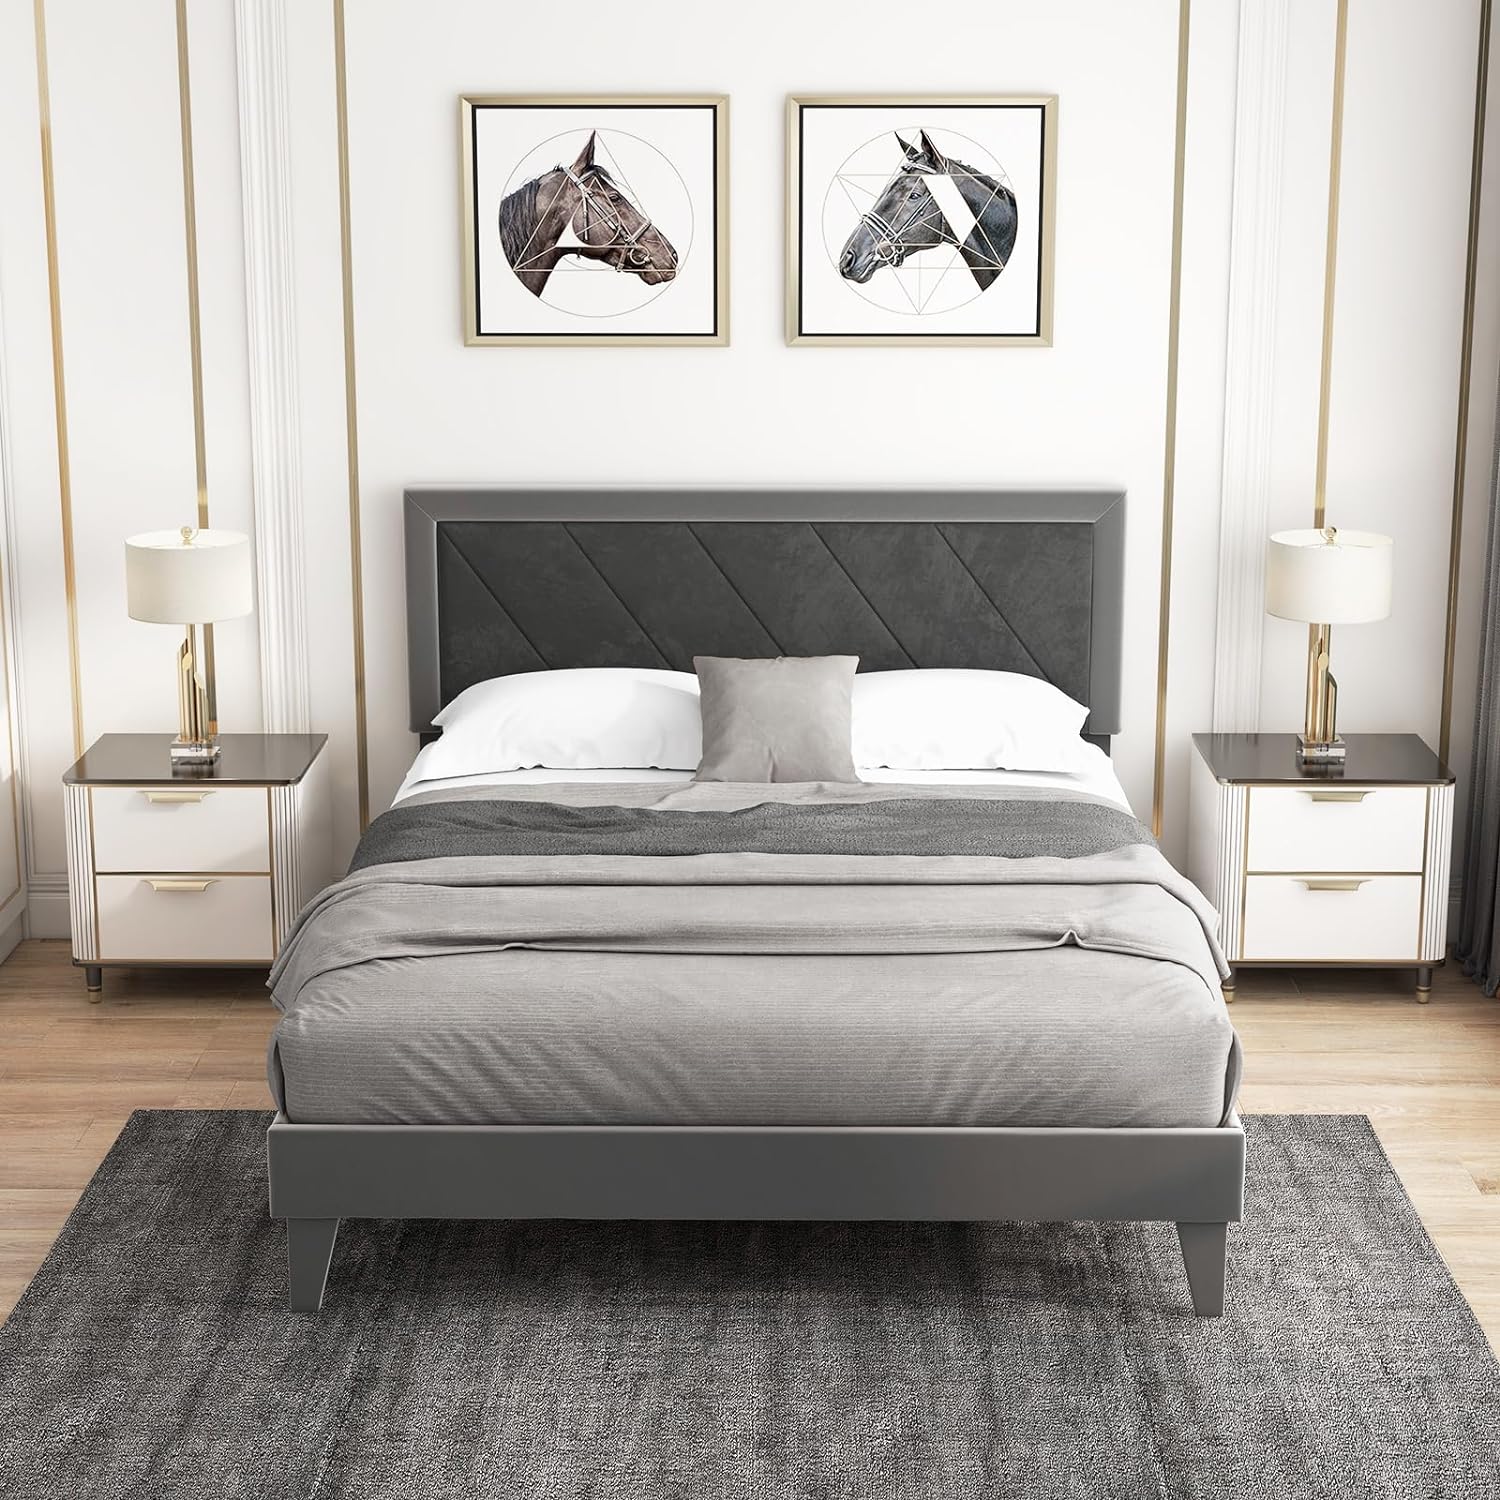 Giantex Full Size Velvet Bed Frame with Headboard, Modern Upholstered Platform Bed, No Box Spring Needed, Black & Gray